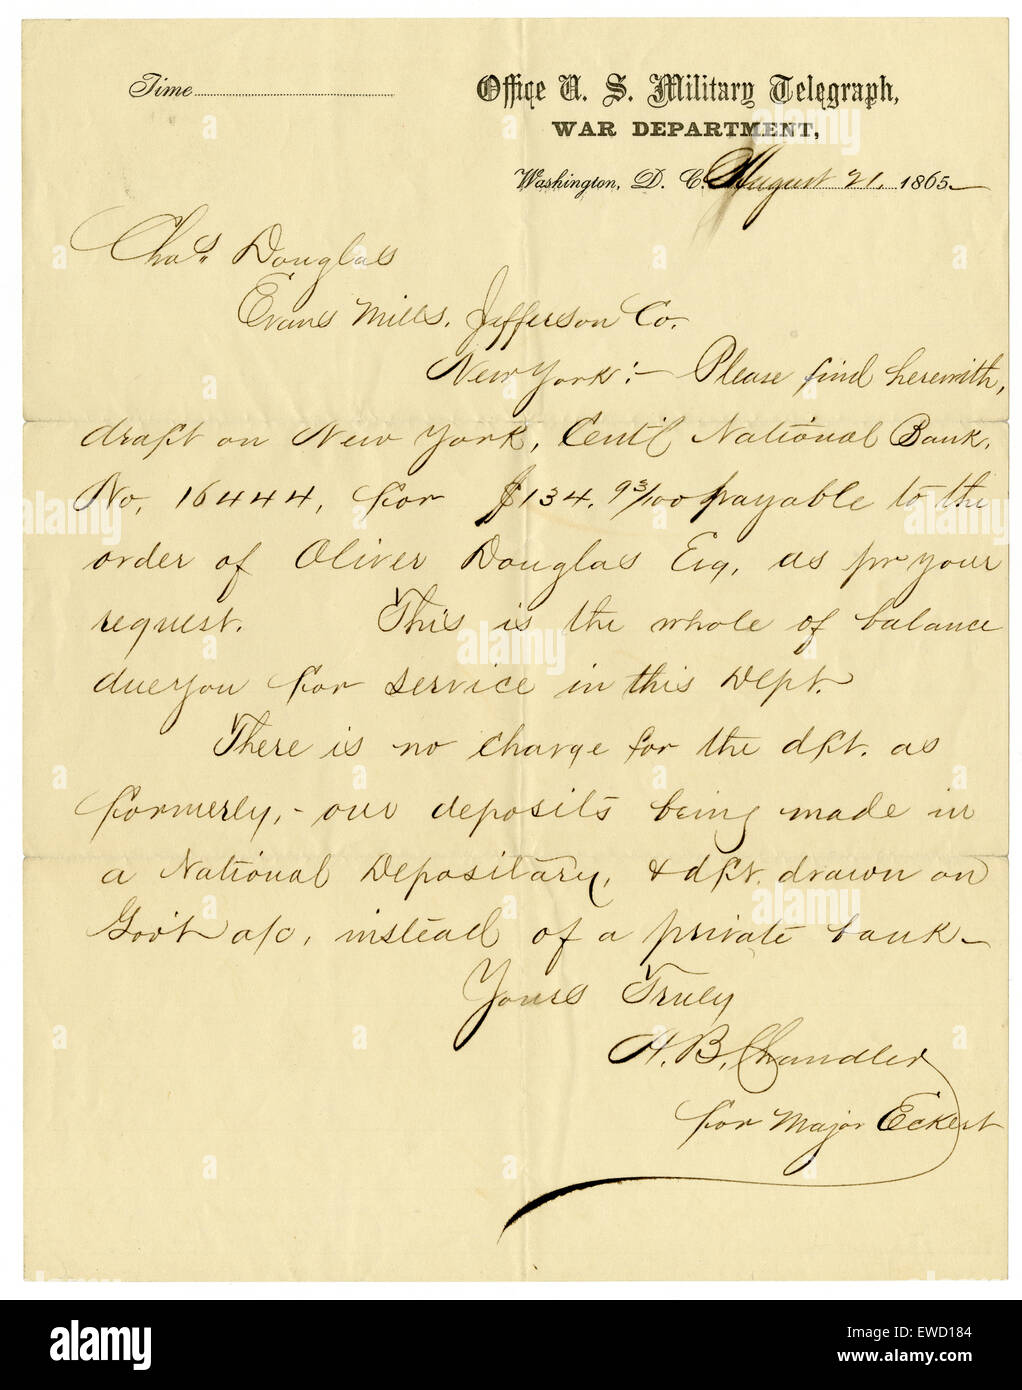 Antike August 1865 Vereinigte Staaten militärische Telegraph Kommunikation bezüglich Zahlung für juristische Dienstleistungen, unterzeichnet H.B Chandler für Major Eckert. Stockfoto